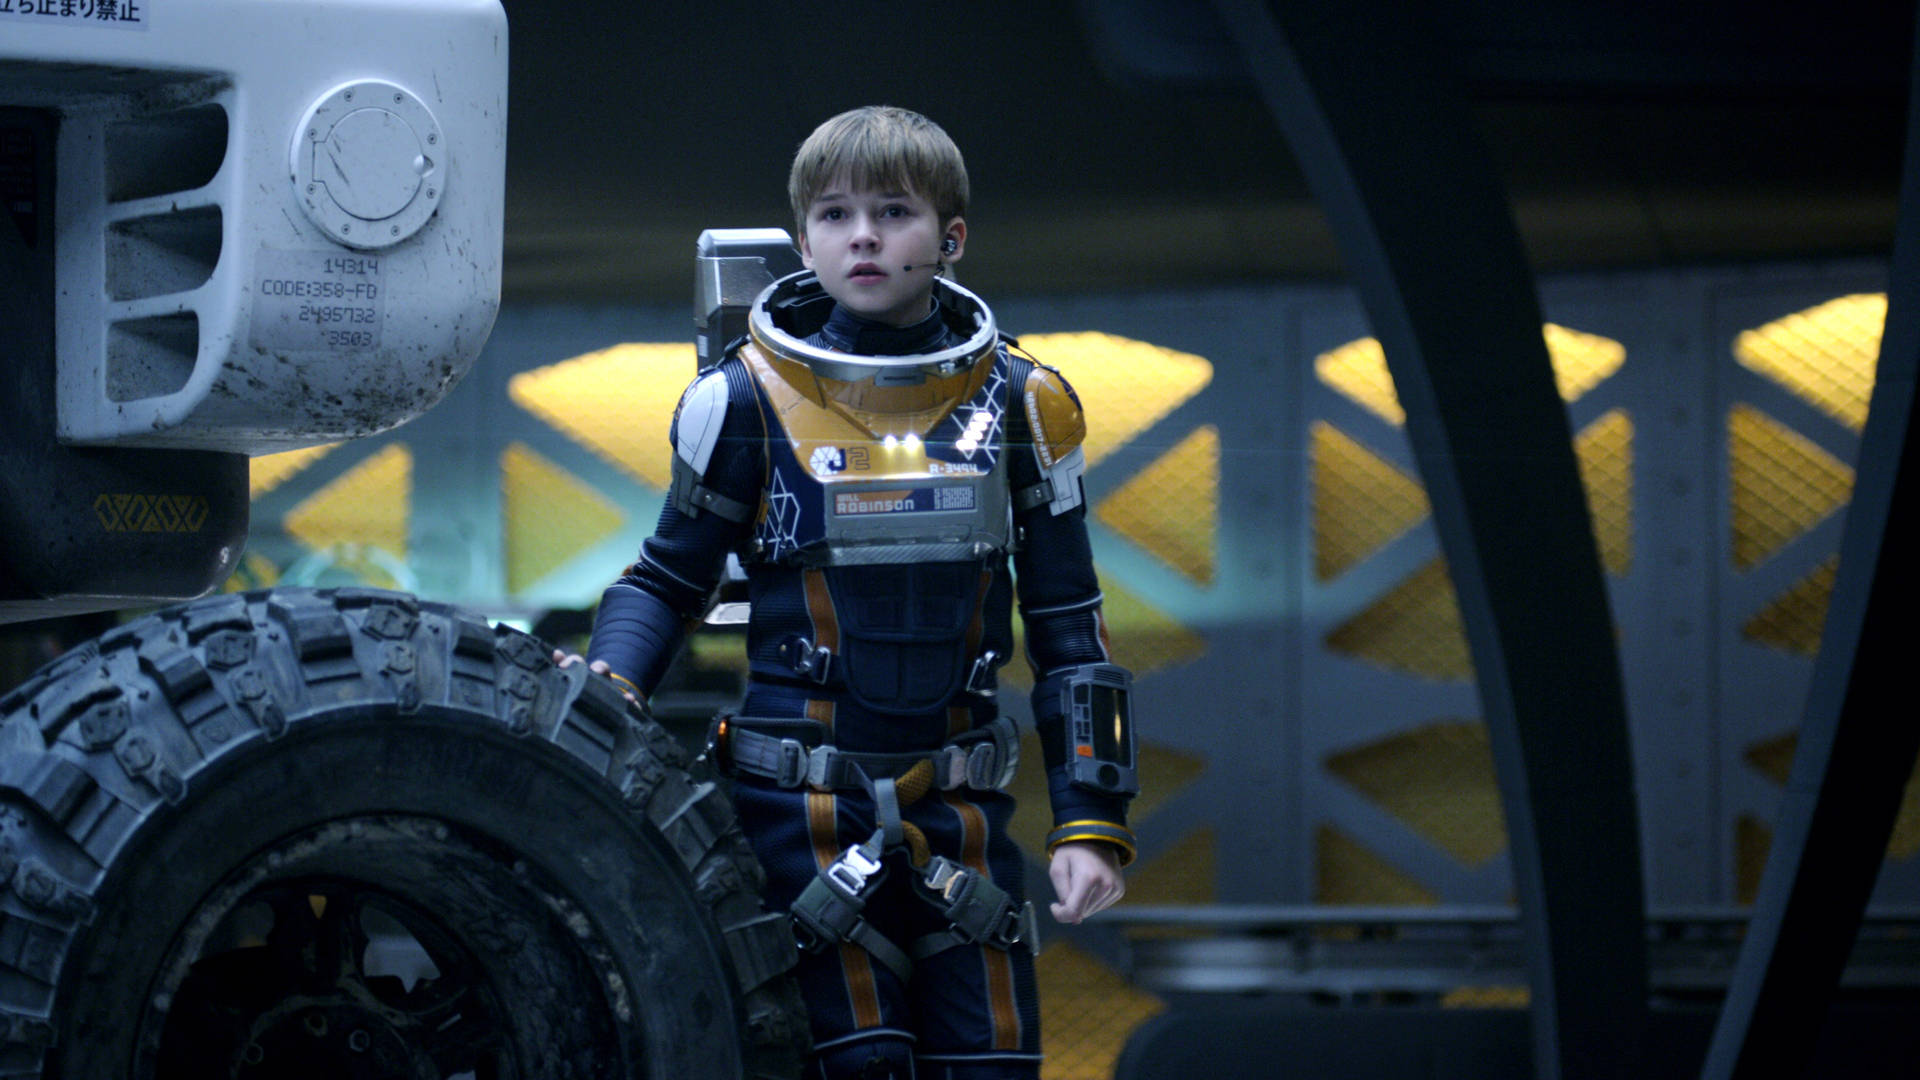 Personajeperdido En El Espacio: Will Robinson Fondo de pantalla